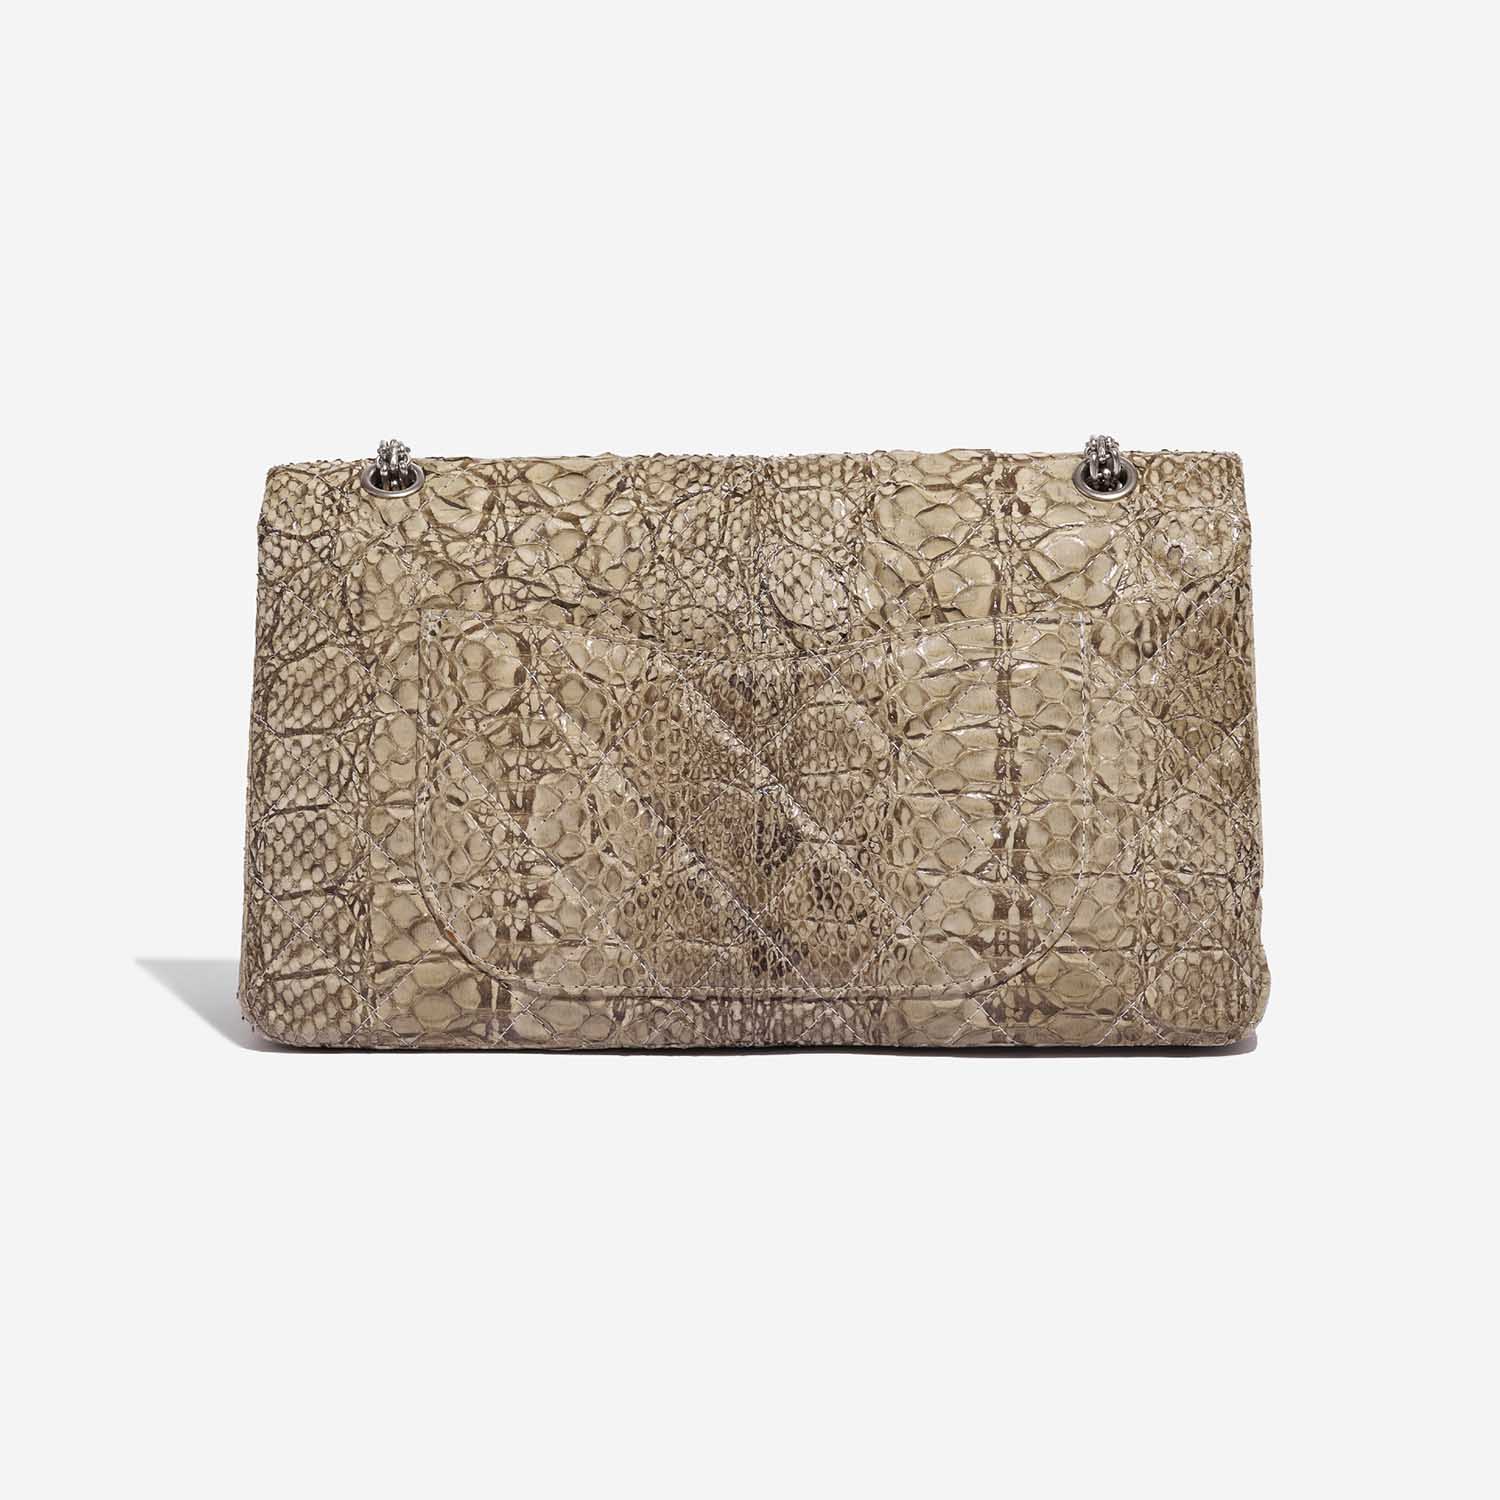 Pre-owned Chanel bag 2.55 Reissue 227 Python Natural Beige Beige Back | Sell your designer bag on Saclab.com